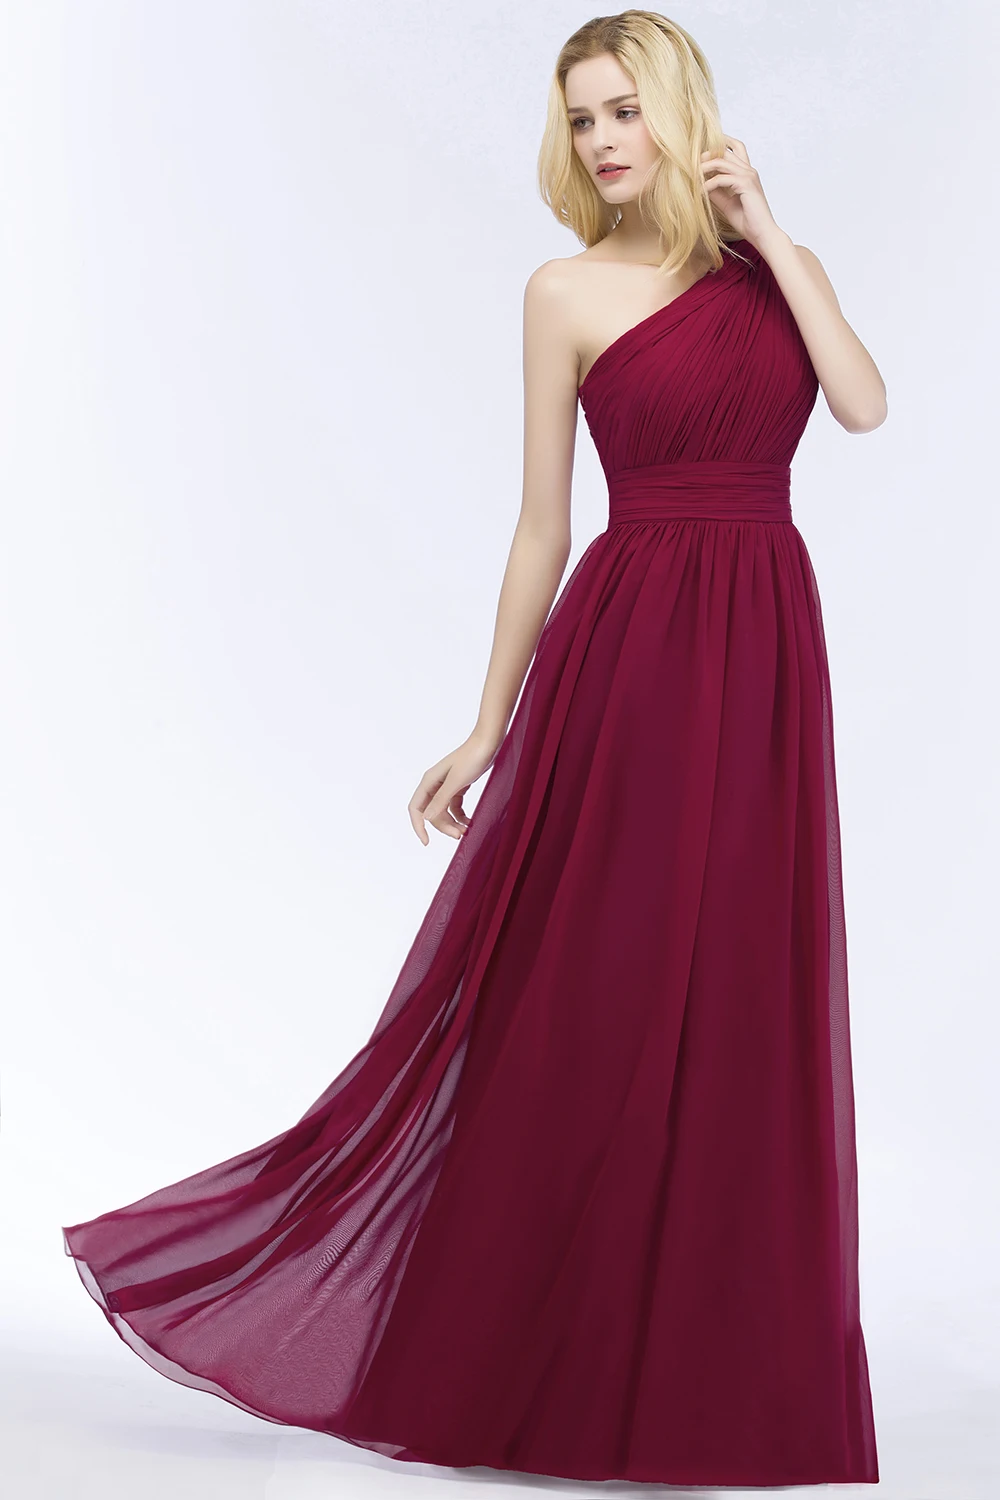 Robe demoiseur d'honneur 2 стиля V шеи/одно плечо бордовые платья подружек невесты длинные шифон выпускное платье вечерние платья